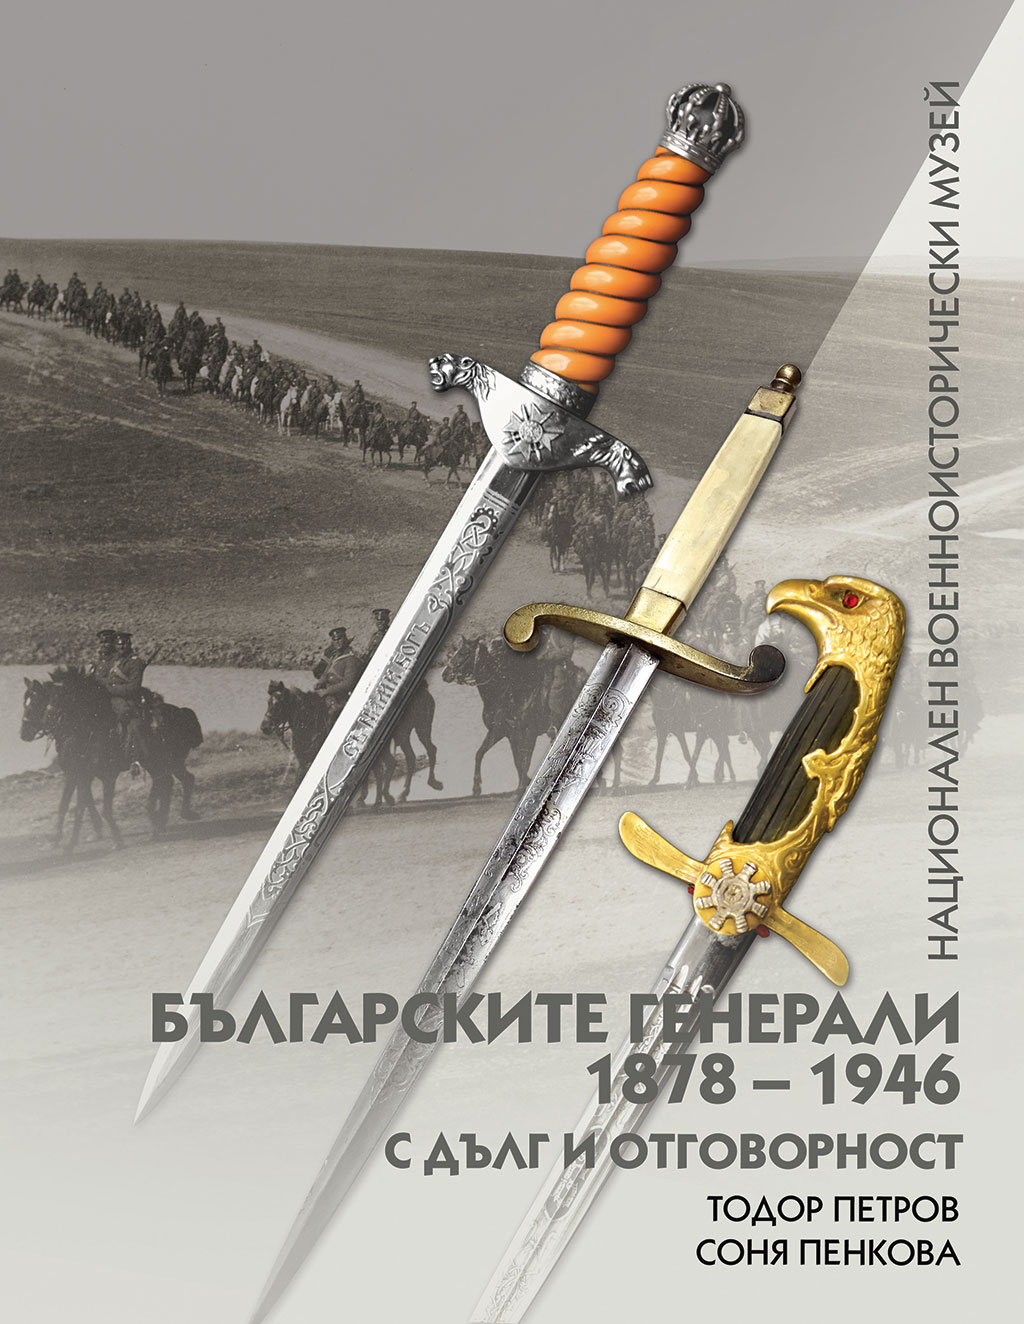 Националният военноисторически музей представя втора книга от поредицата „Българските генерали 1878 – 1946“